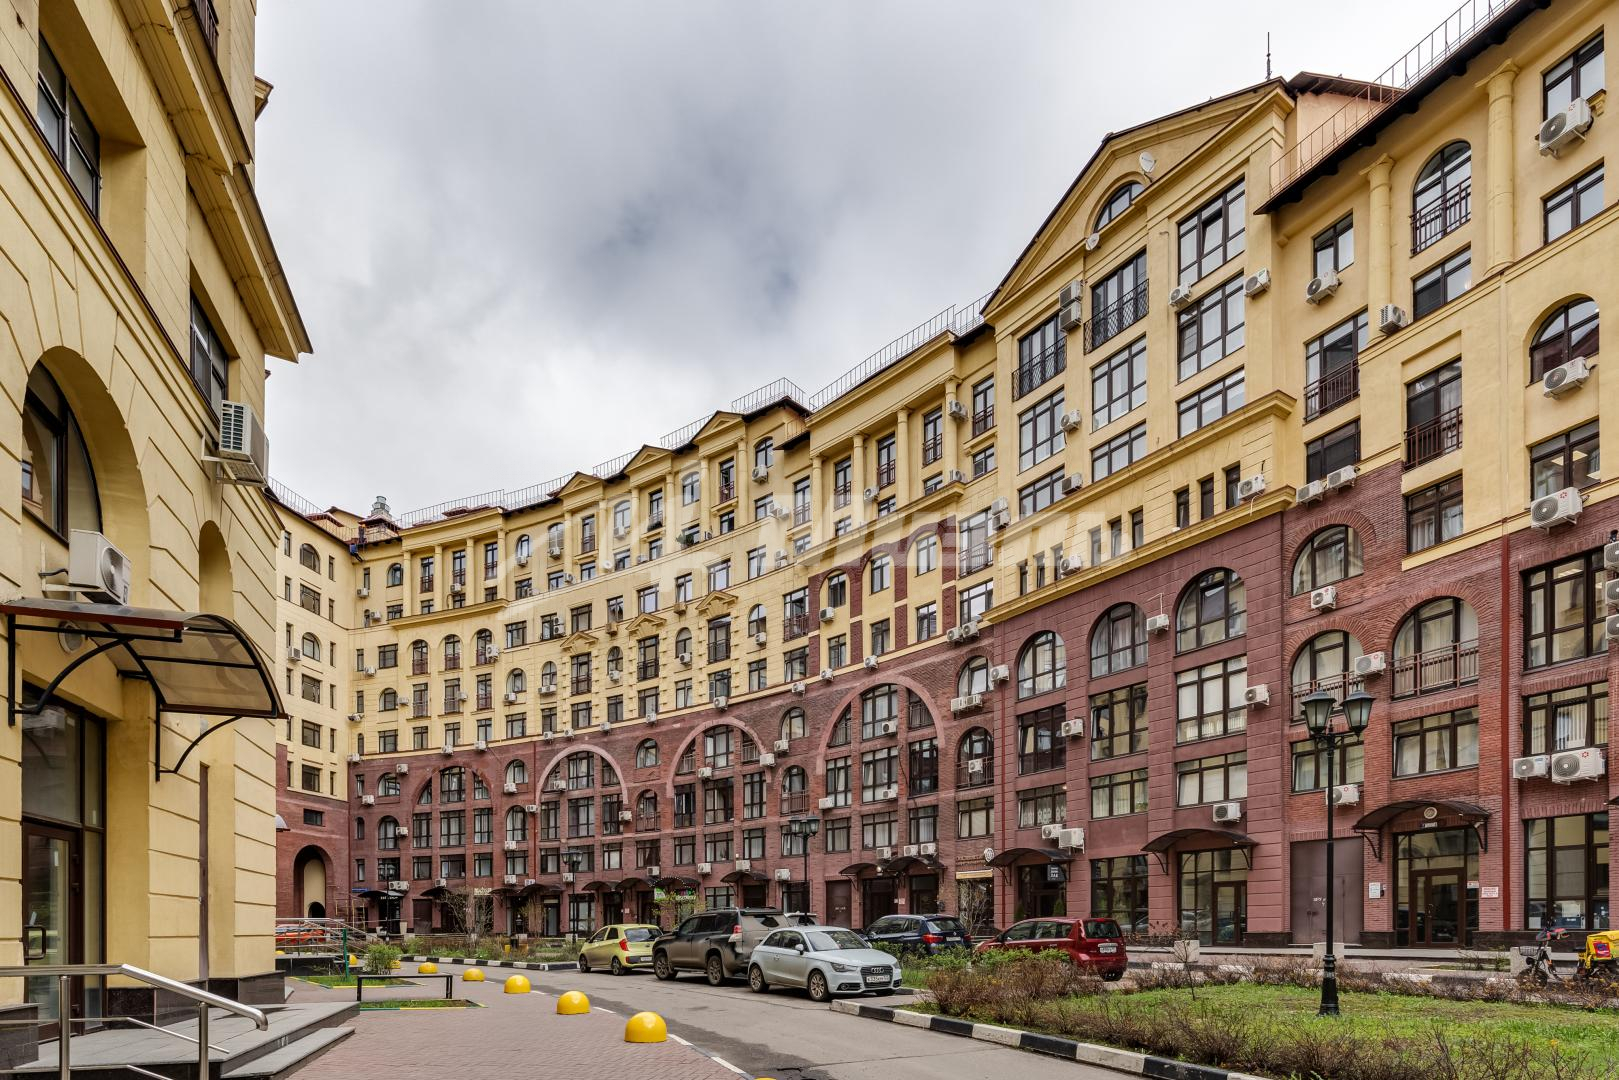 Продам квартиру в Москве по адресу улица Маршала Рыбалко, 2 корпус 9, площадь 55 квм Недвижимость Москва (Россия)